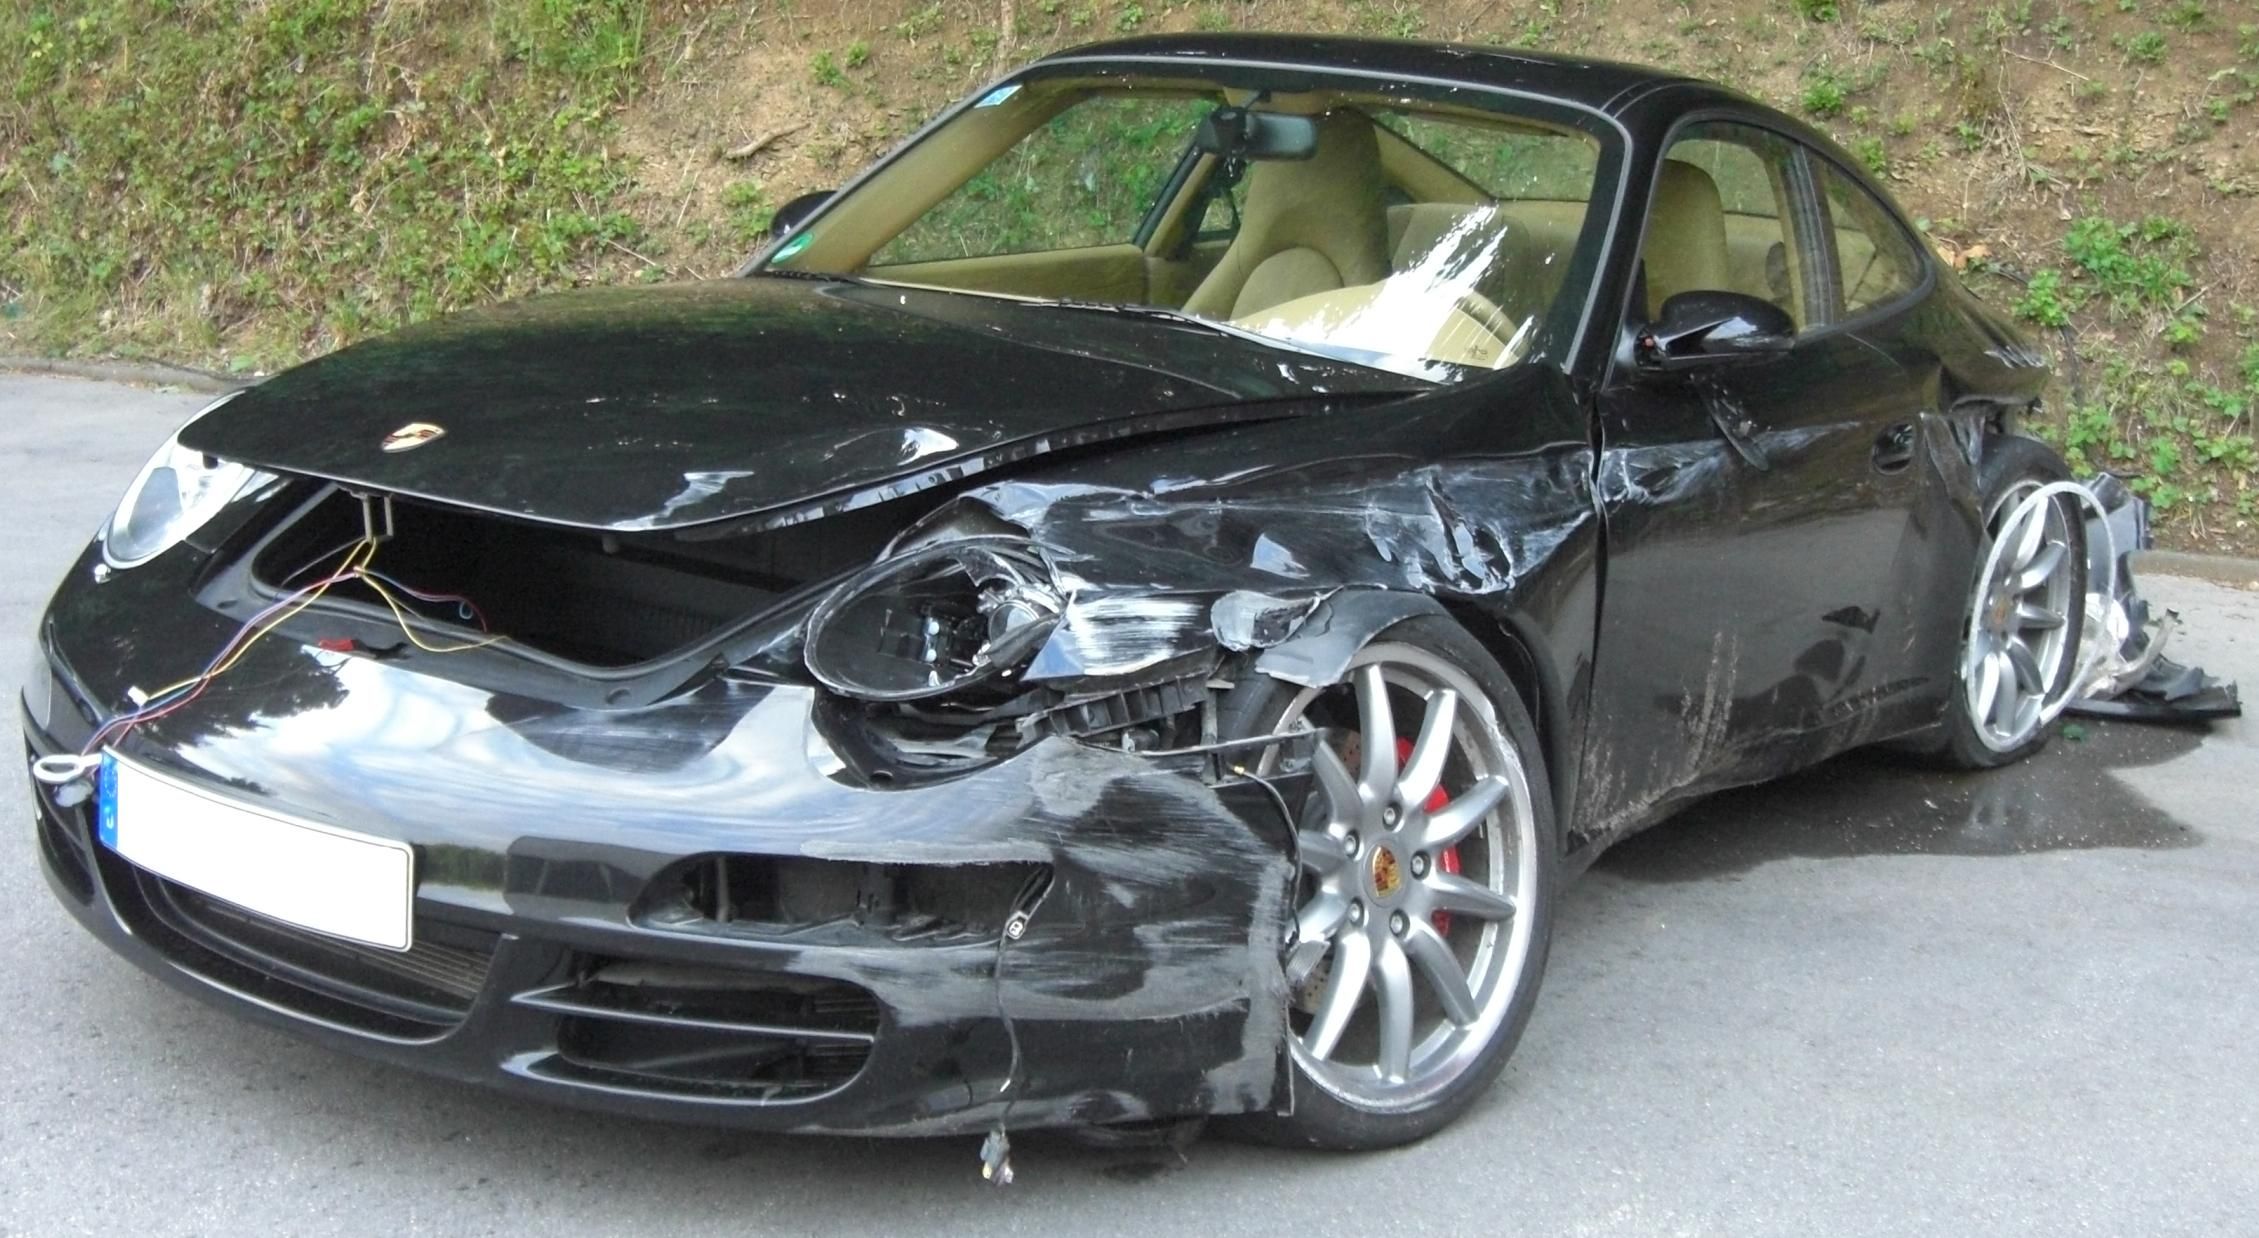 Porsche 911 Crashed